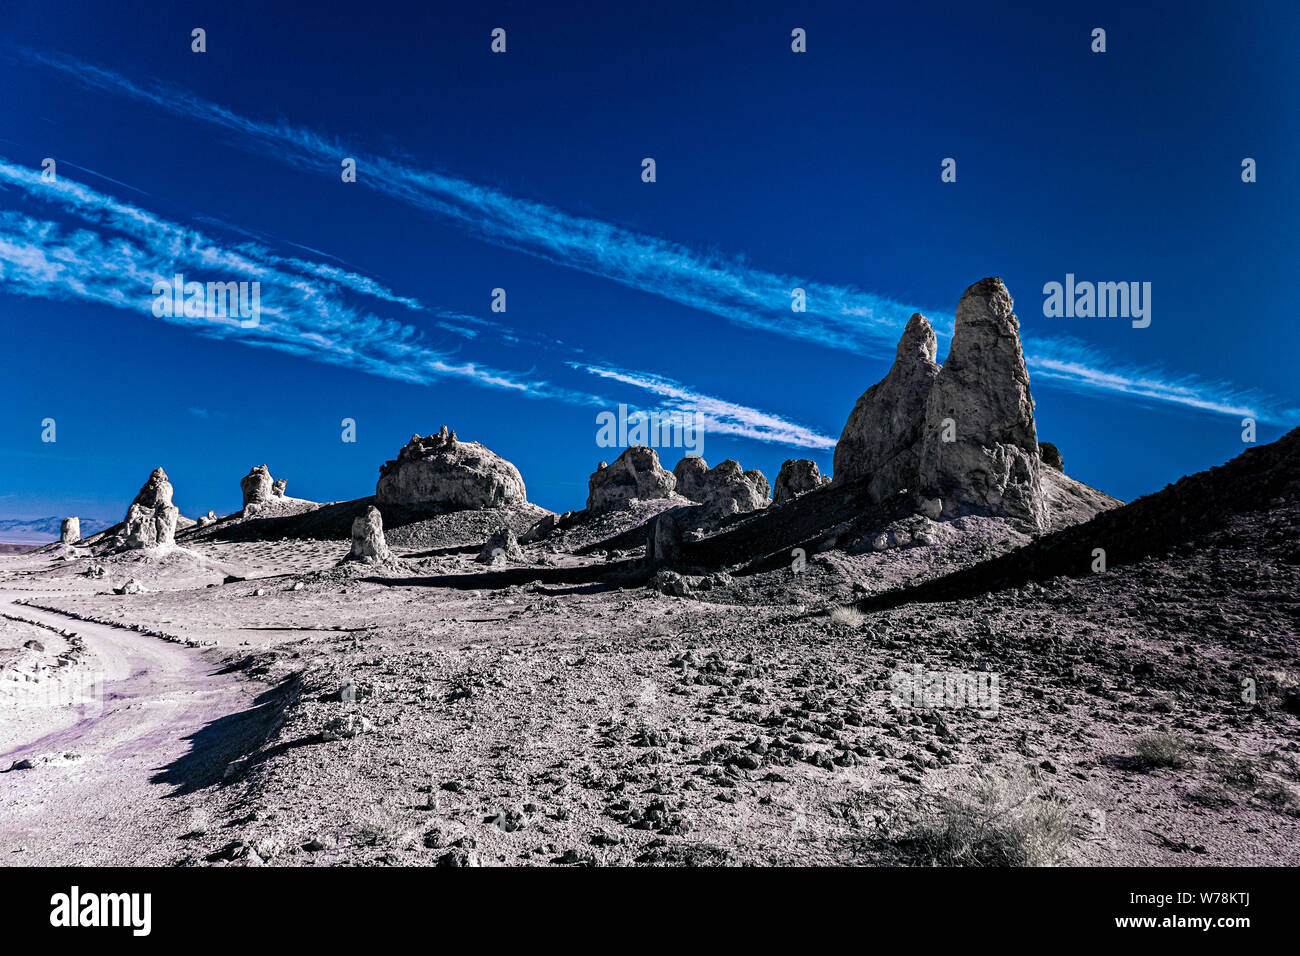 Camino de tierra que conduce a través de yermo desolado paisaje desértico con pináculos y formaciones rocosas en blanco y negro bajo el cielo azul con nubes blancas. Foto de stock